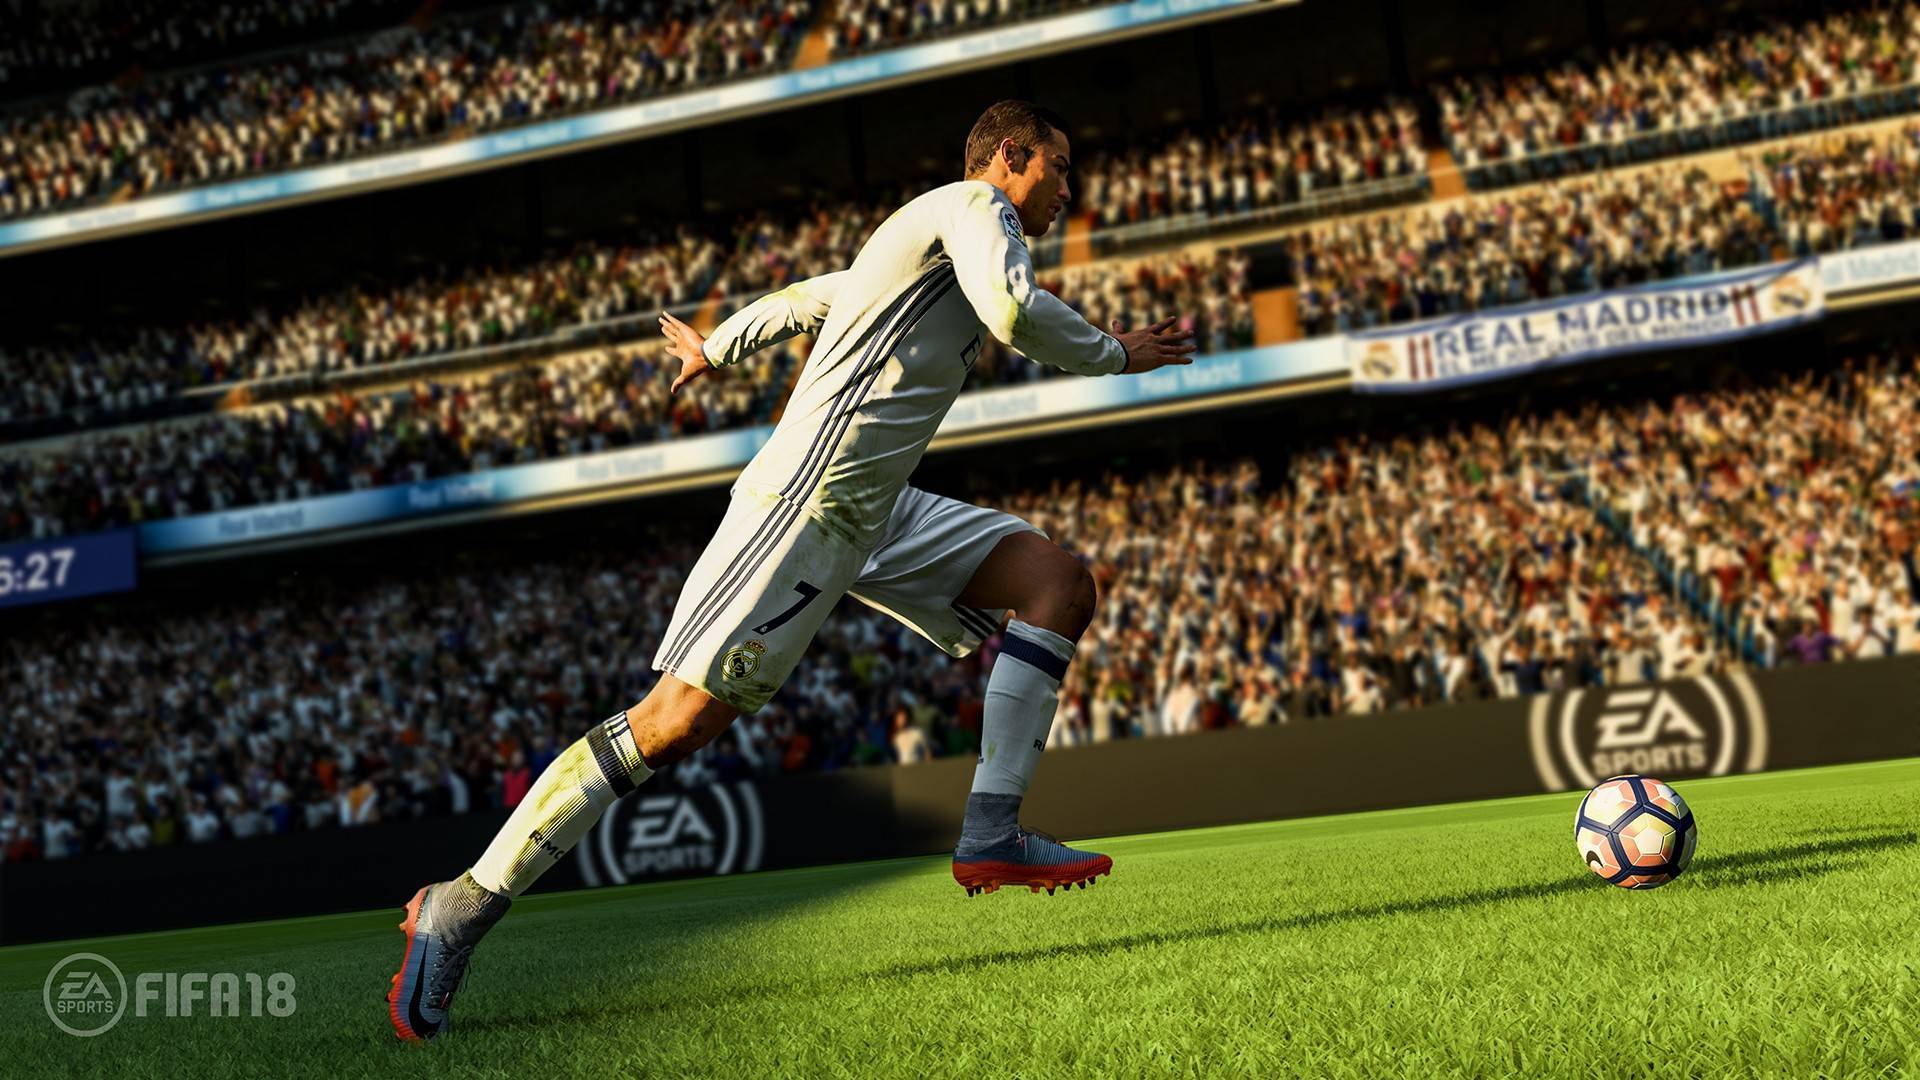 FIFA 18 (PS4) preço mais barato: 9,03€